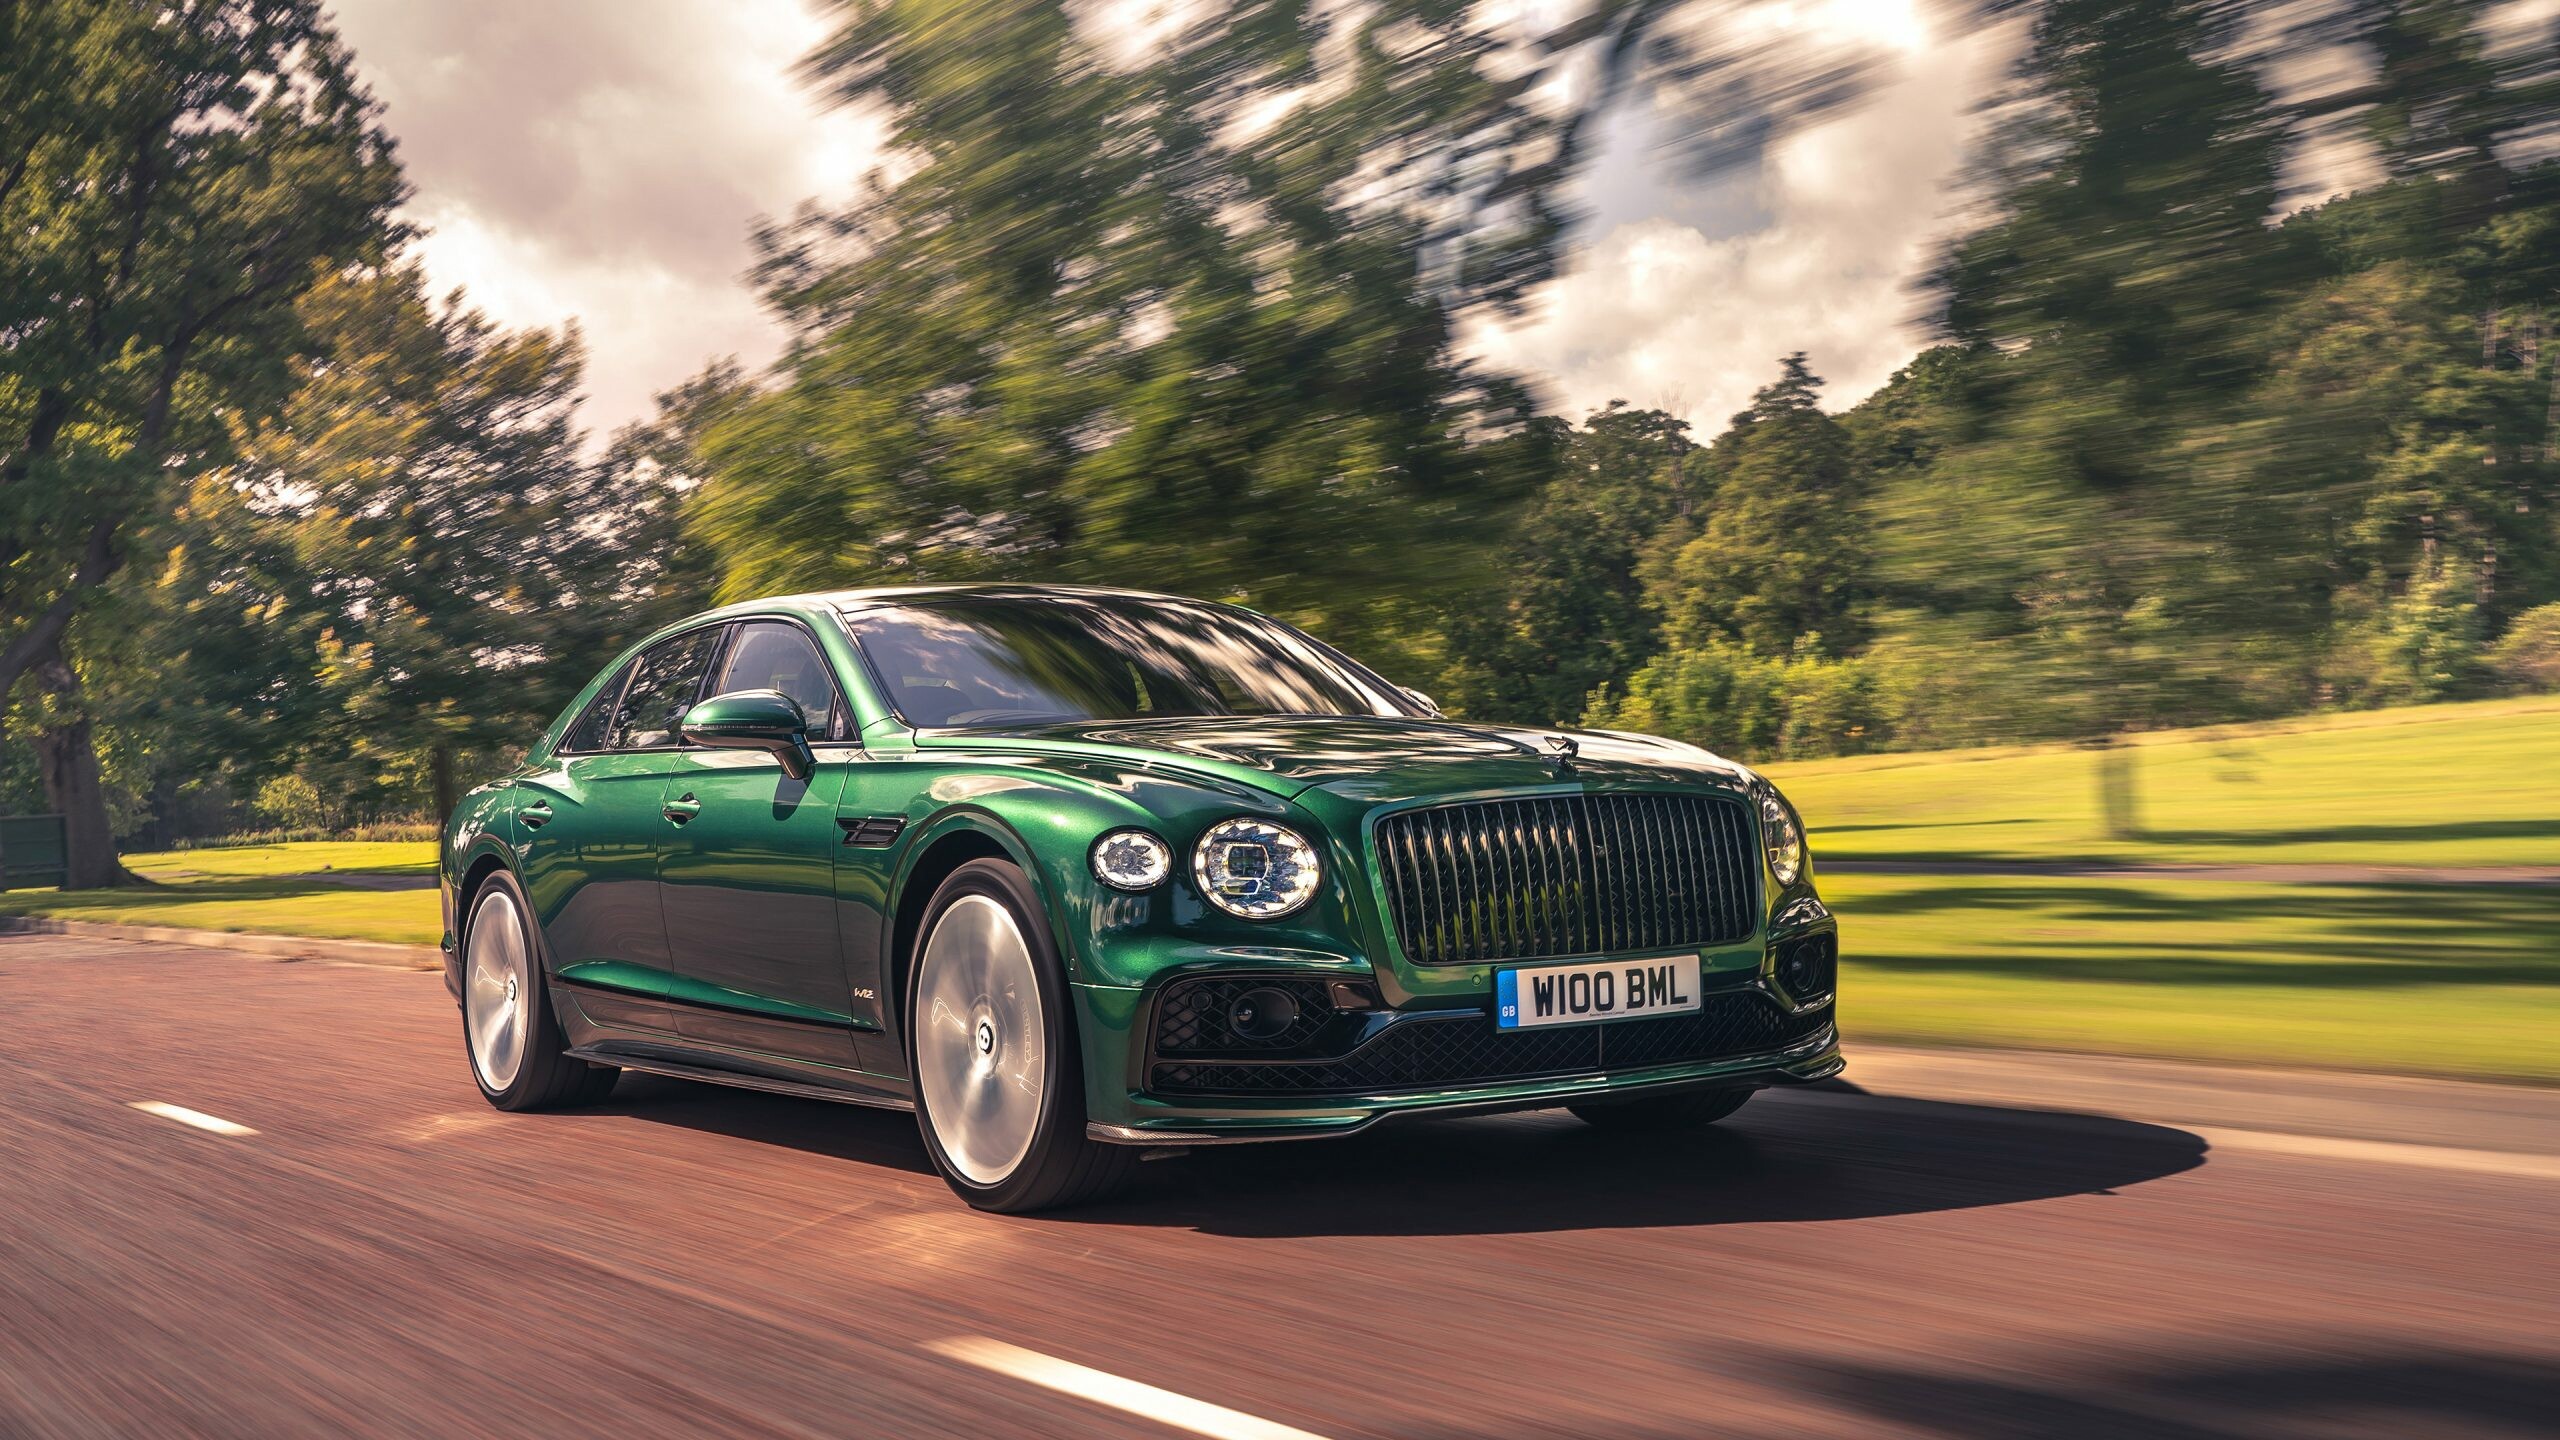 Bentley: It is the four-door grand tourer variant of the Bentley Continental GT coupe. 2560x1440 HD Wallpaper.